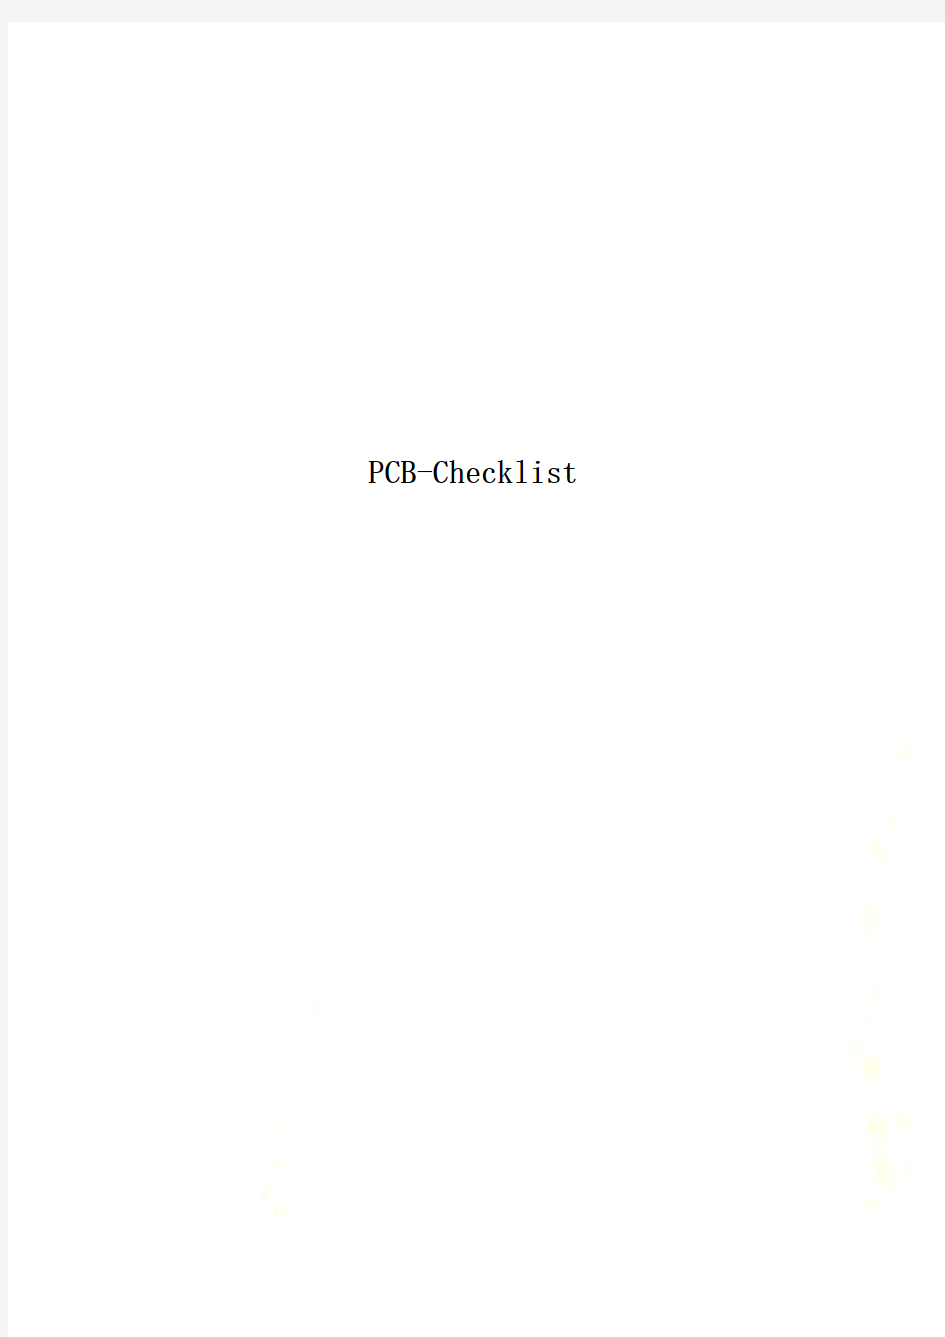 PCB-Checklist